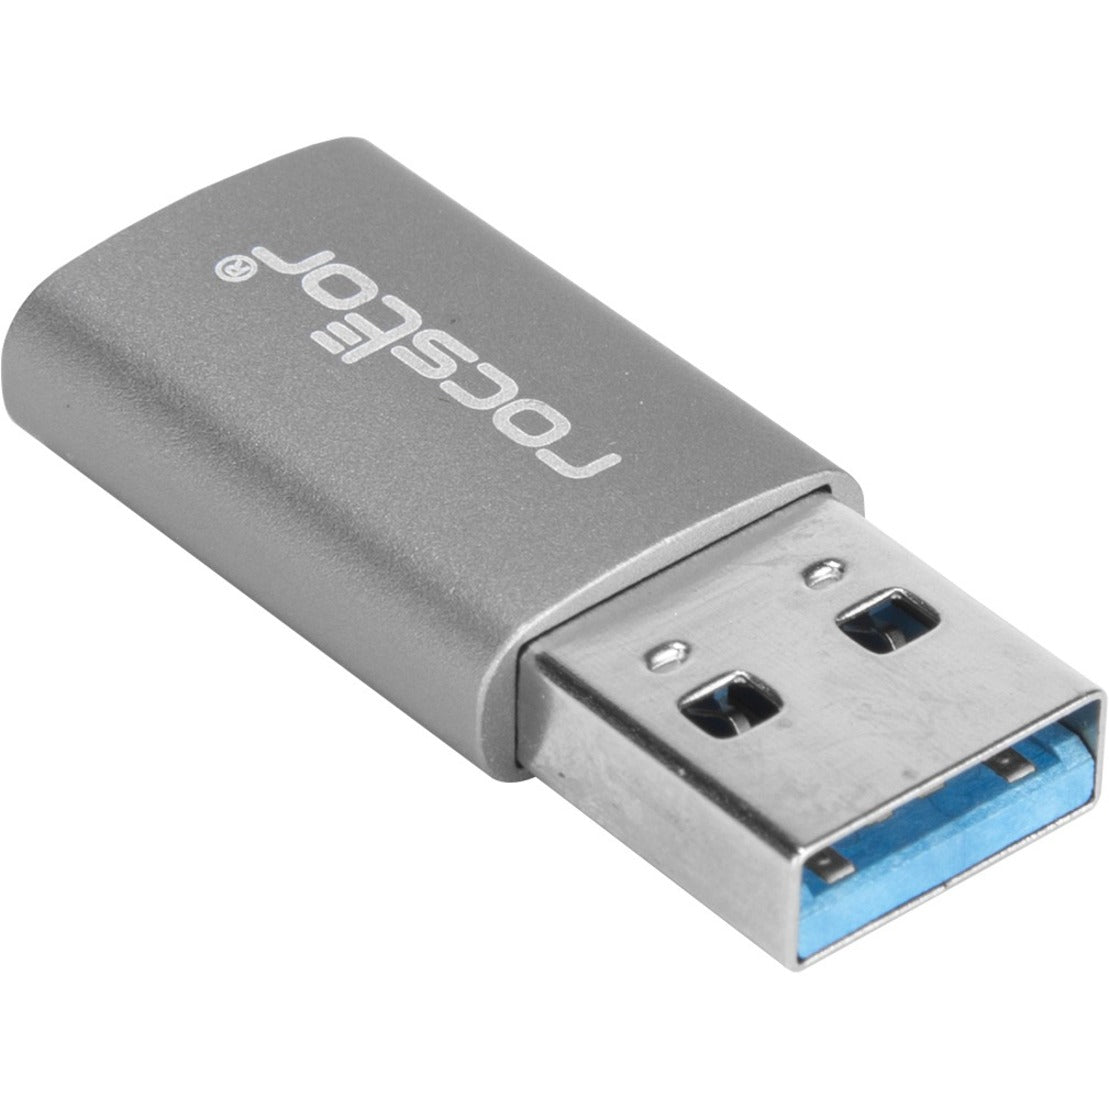 Rocstor Y10A207-G1 Adaptador Premium USB 3.0 de alta velocidad USB Tipo A a USB-C (M/H) Reversible Carga Moldeado